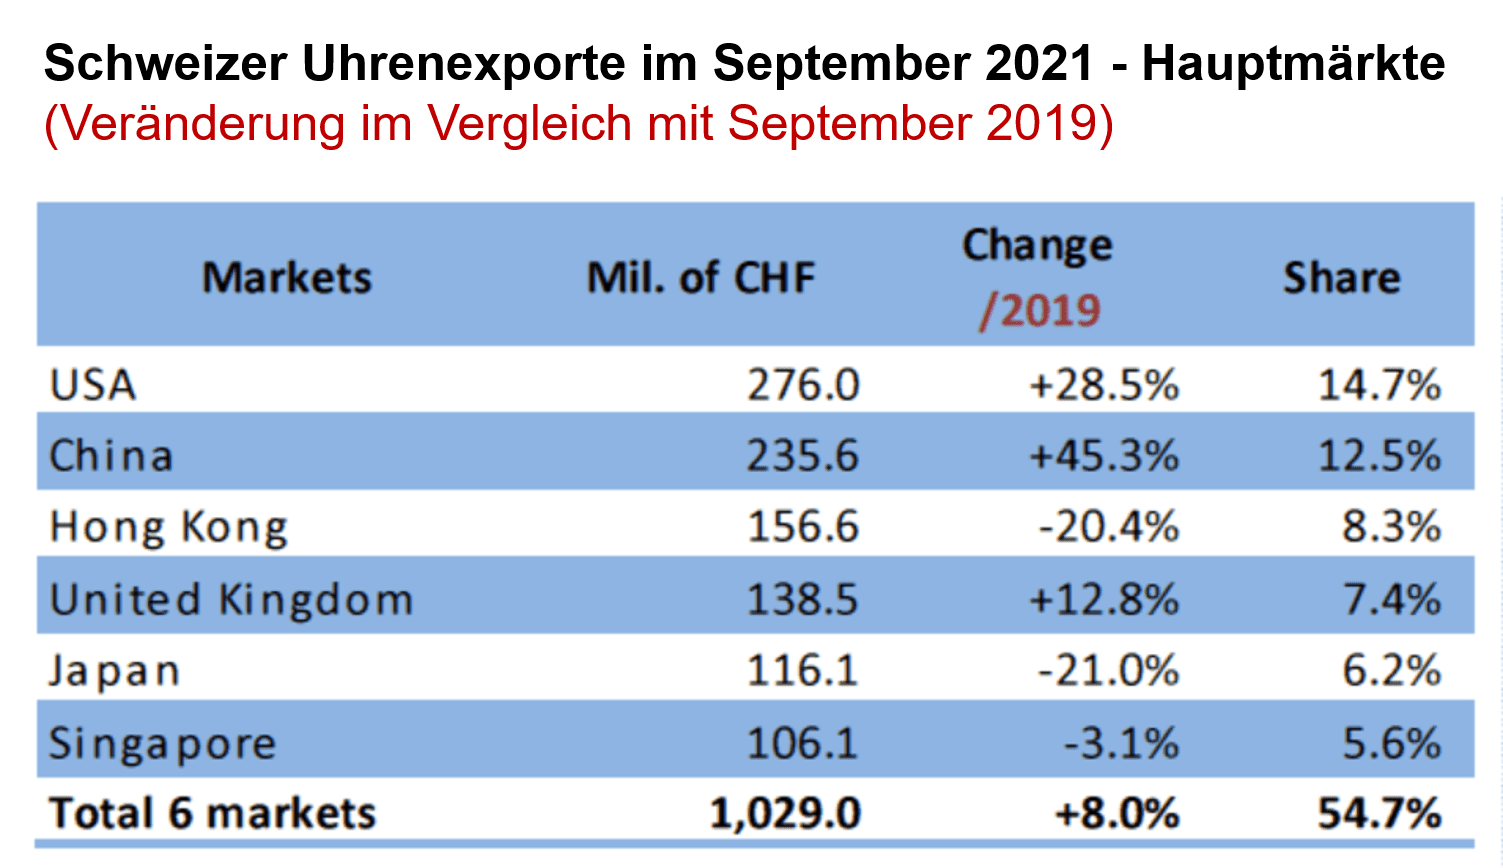 Schweizer Uhrenexporte September 2021 vs 2019 nach wichtigsten Märkten